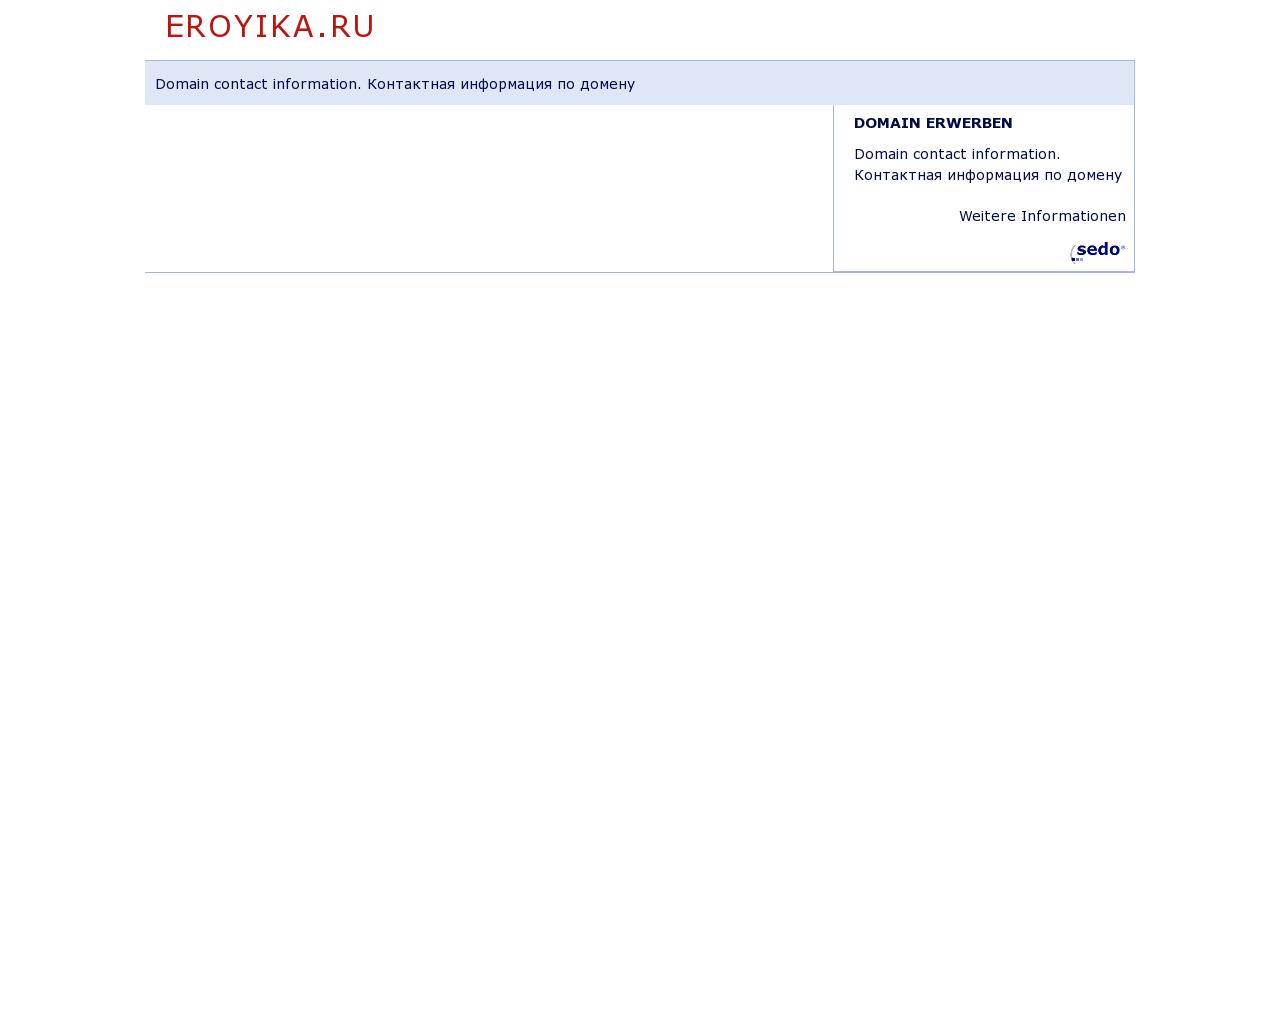 Изображение сайта eroyika.ru в разрешении 1280x1024